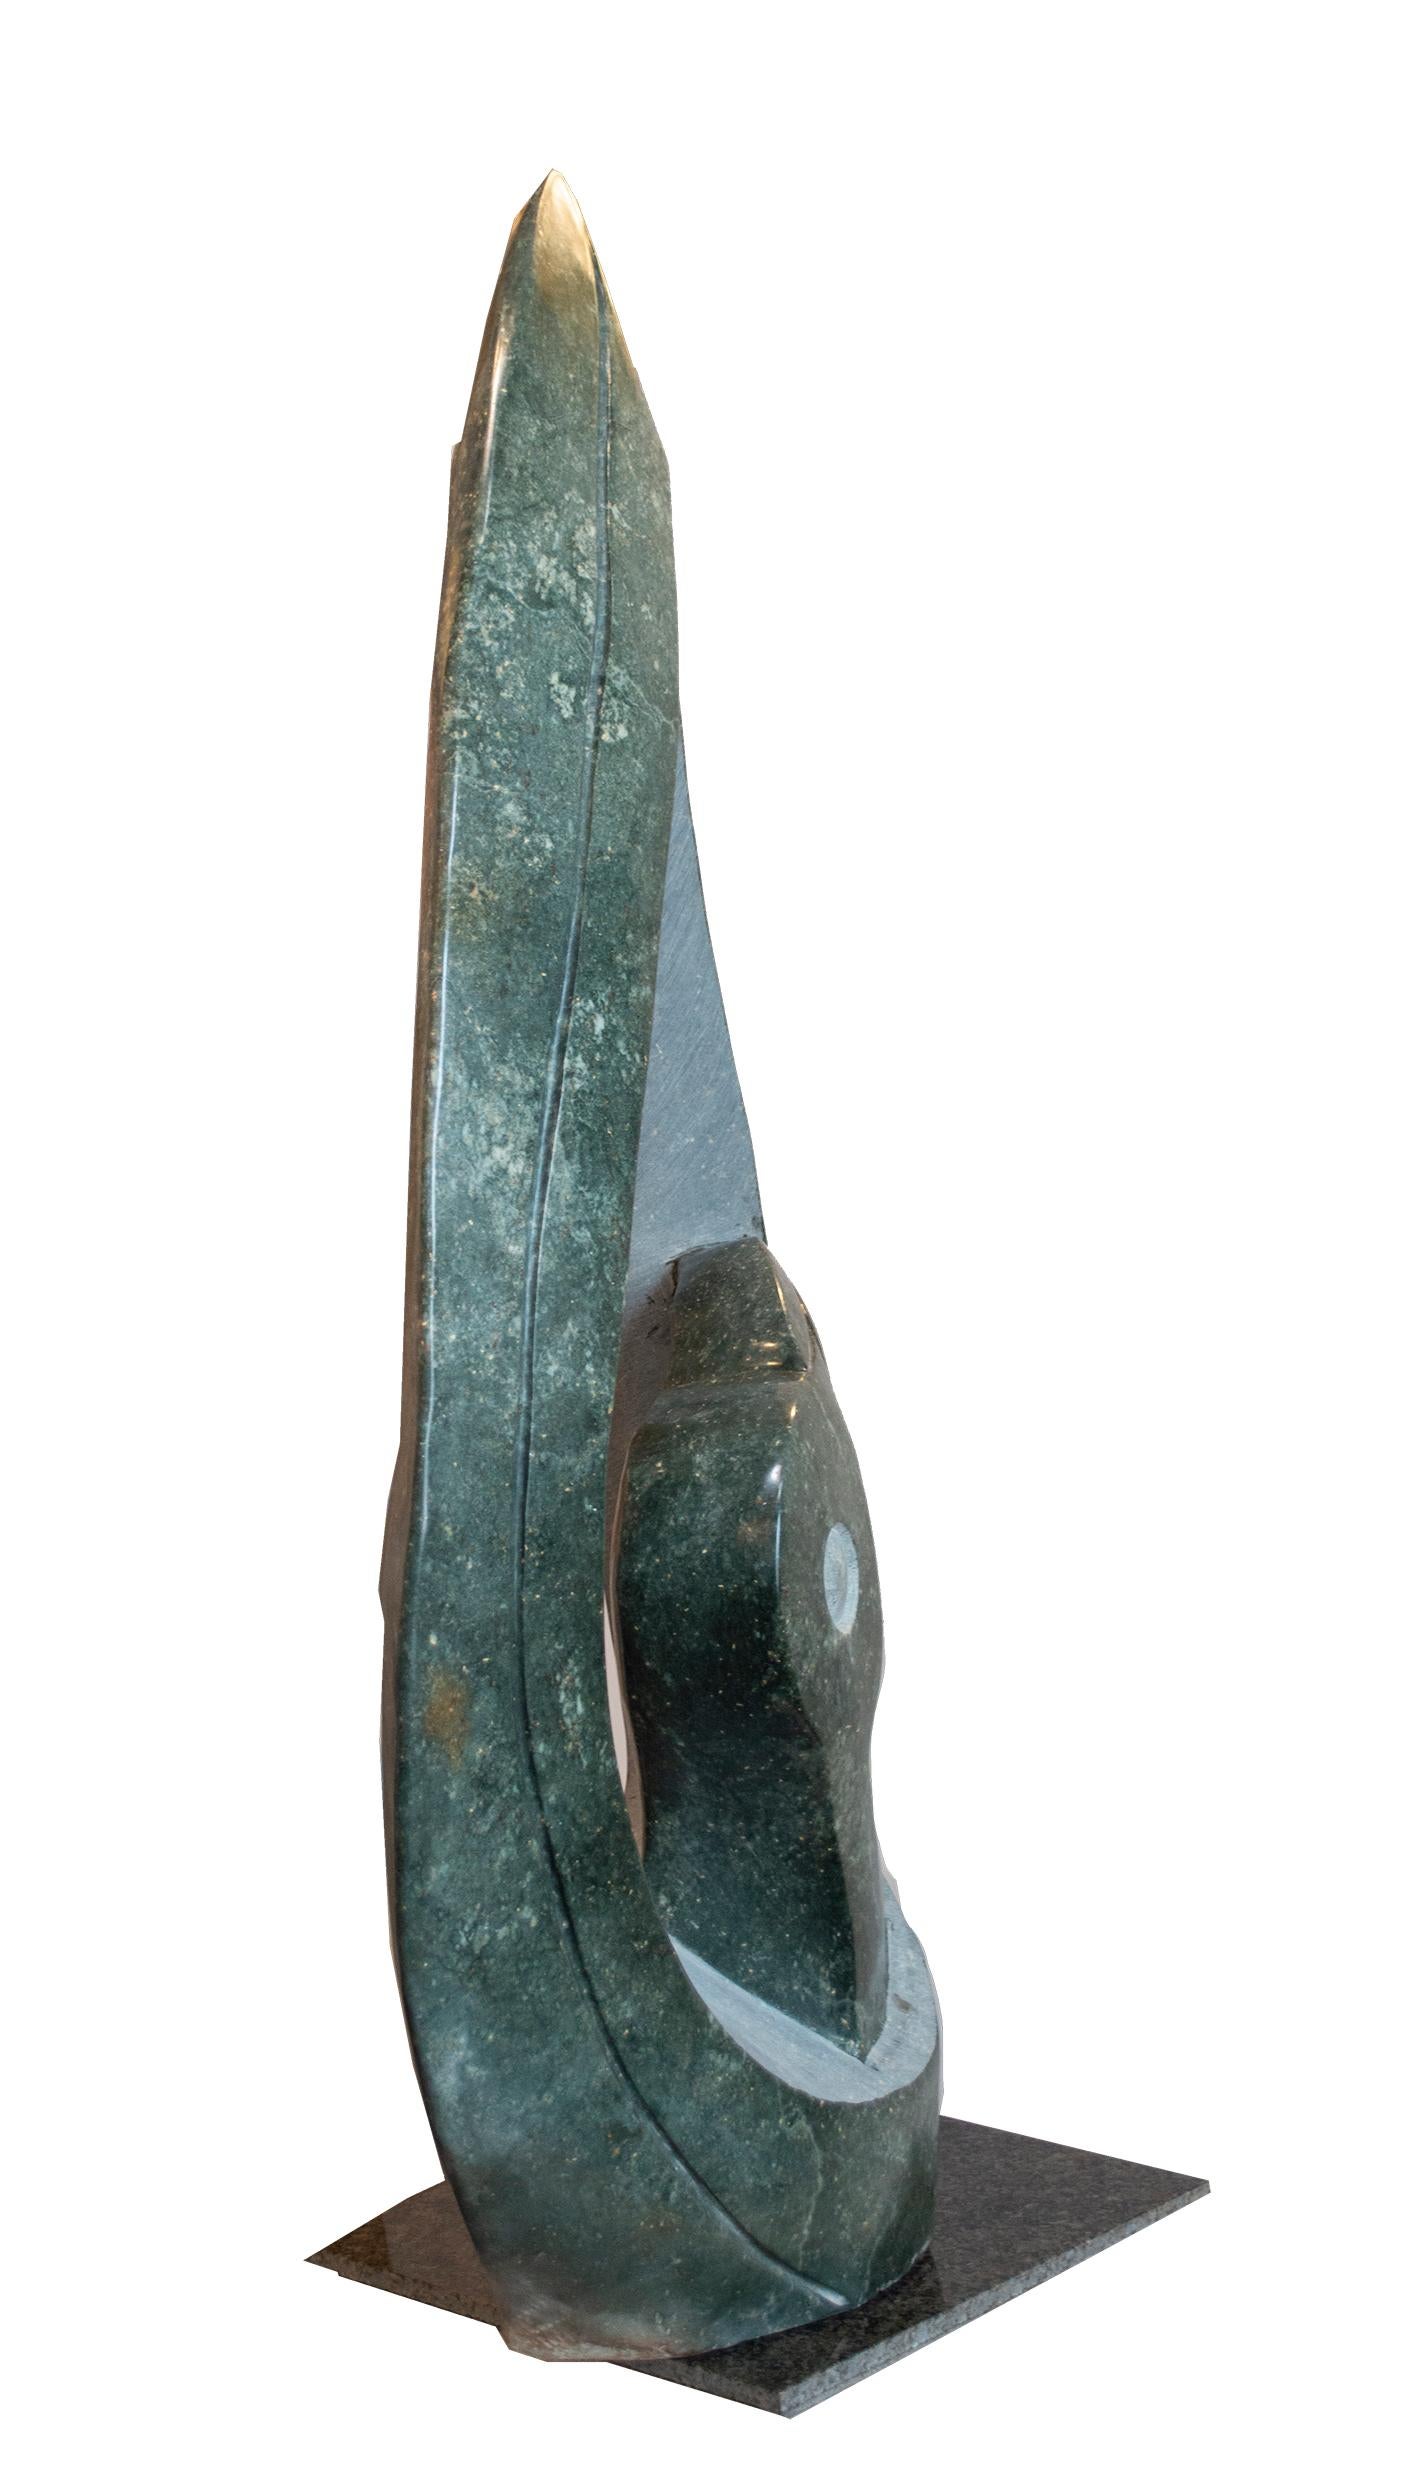 l'oiseau-cigogne est une sculpture originale en opale serpentine signée par l'artiste contemporain zimbabwéen Jonathan Nhete. L'artiste présente dans cette sculpture la figure très abstraite d'un oiseau, dont le long bec et l'œil émergent brillants